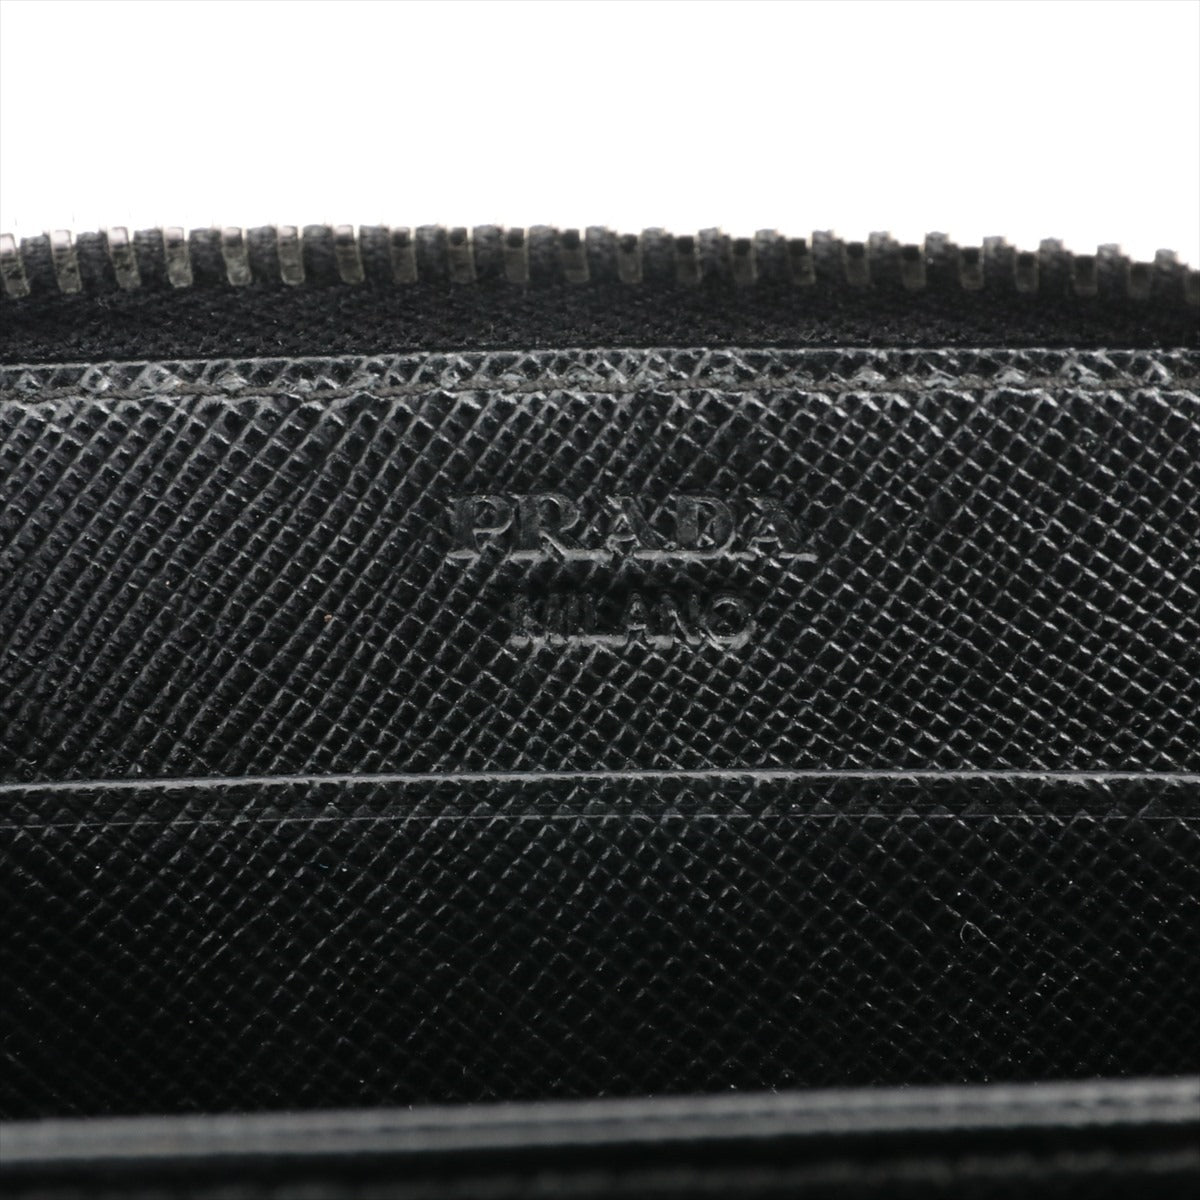 プラダ サフィアーノ 1M0268 レザー コインケース ブラック